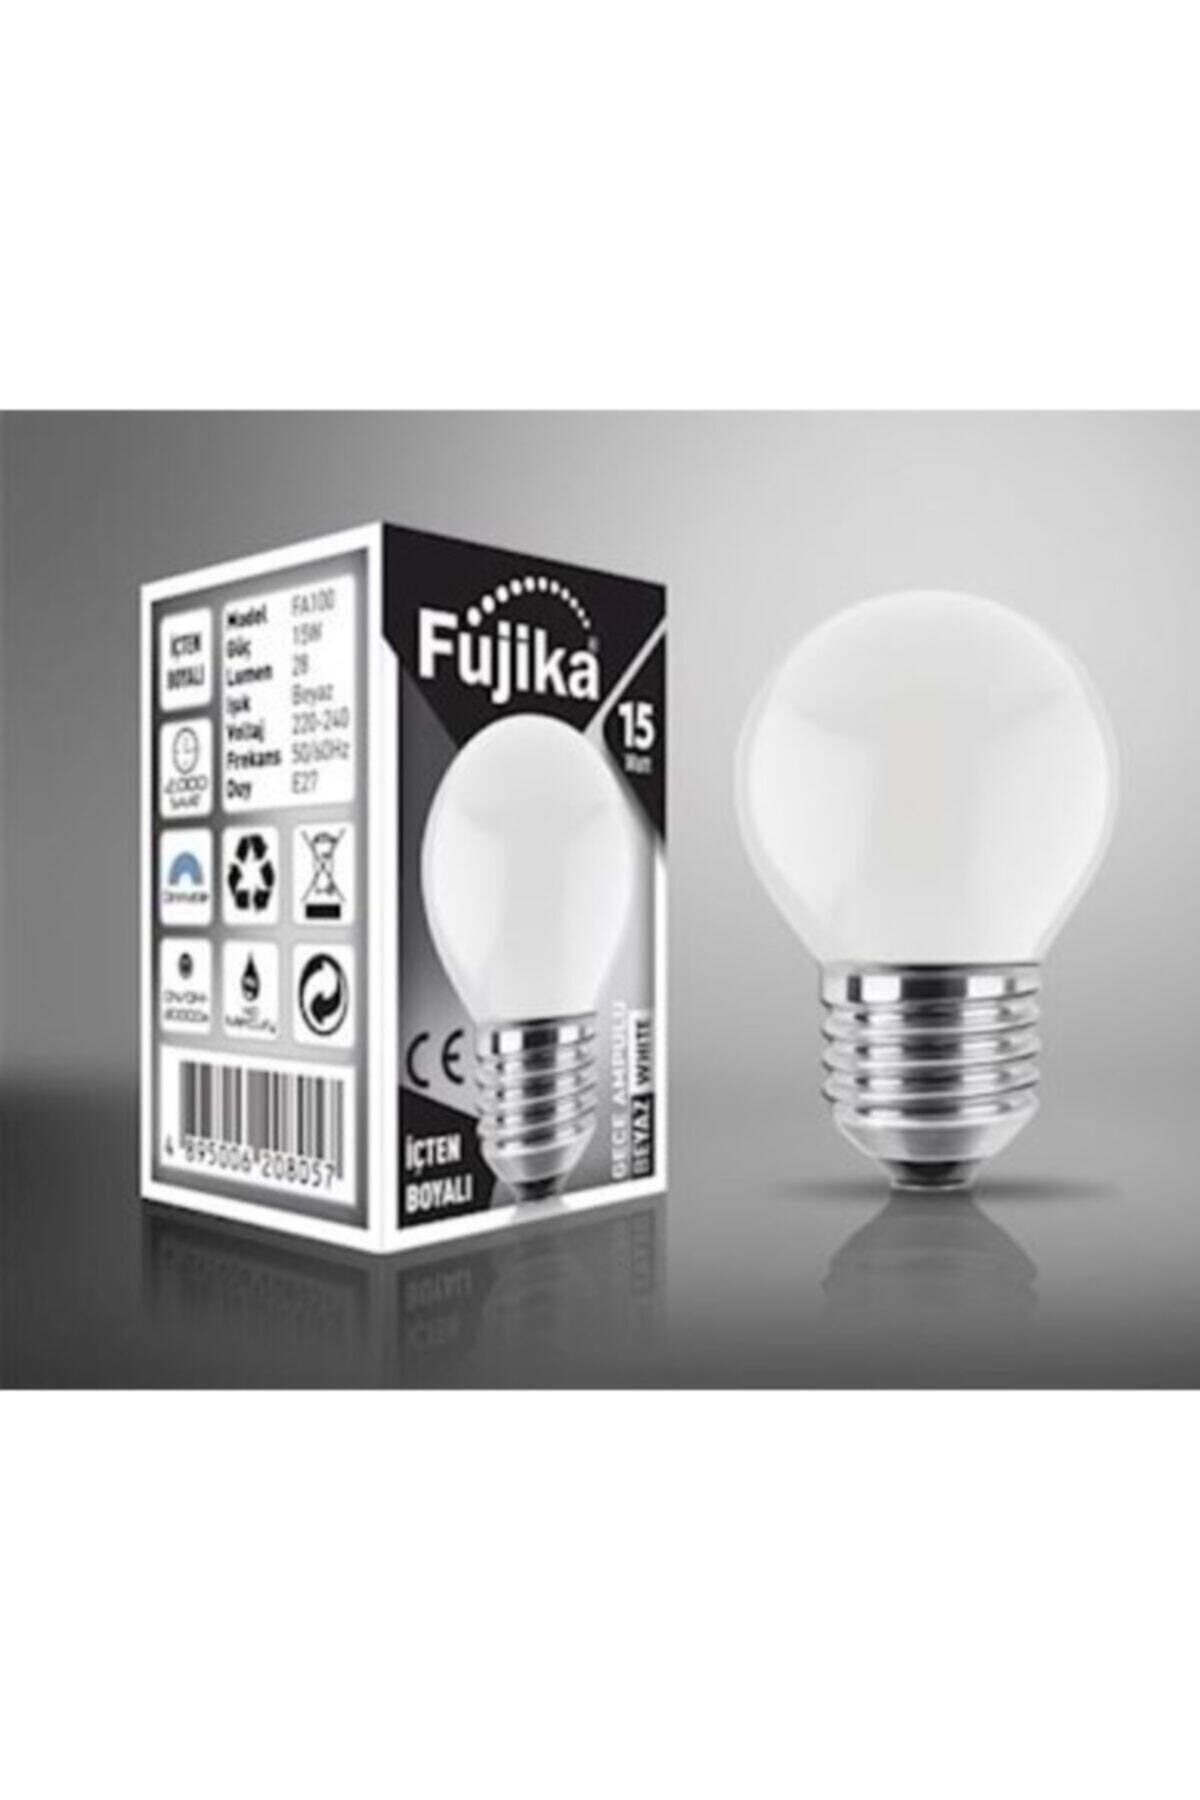 Fujika 15 Watt Renkli Gece Lambası Ampulü Beyaz Renk